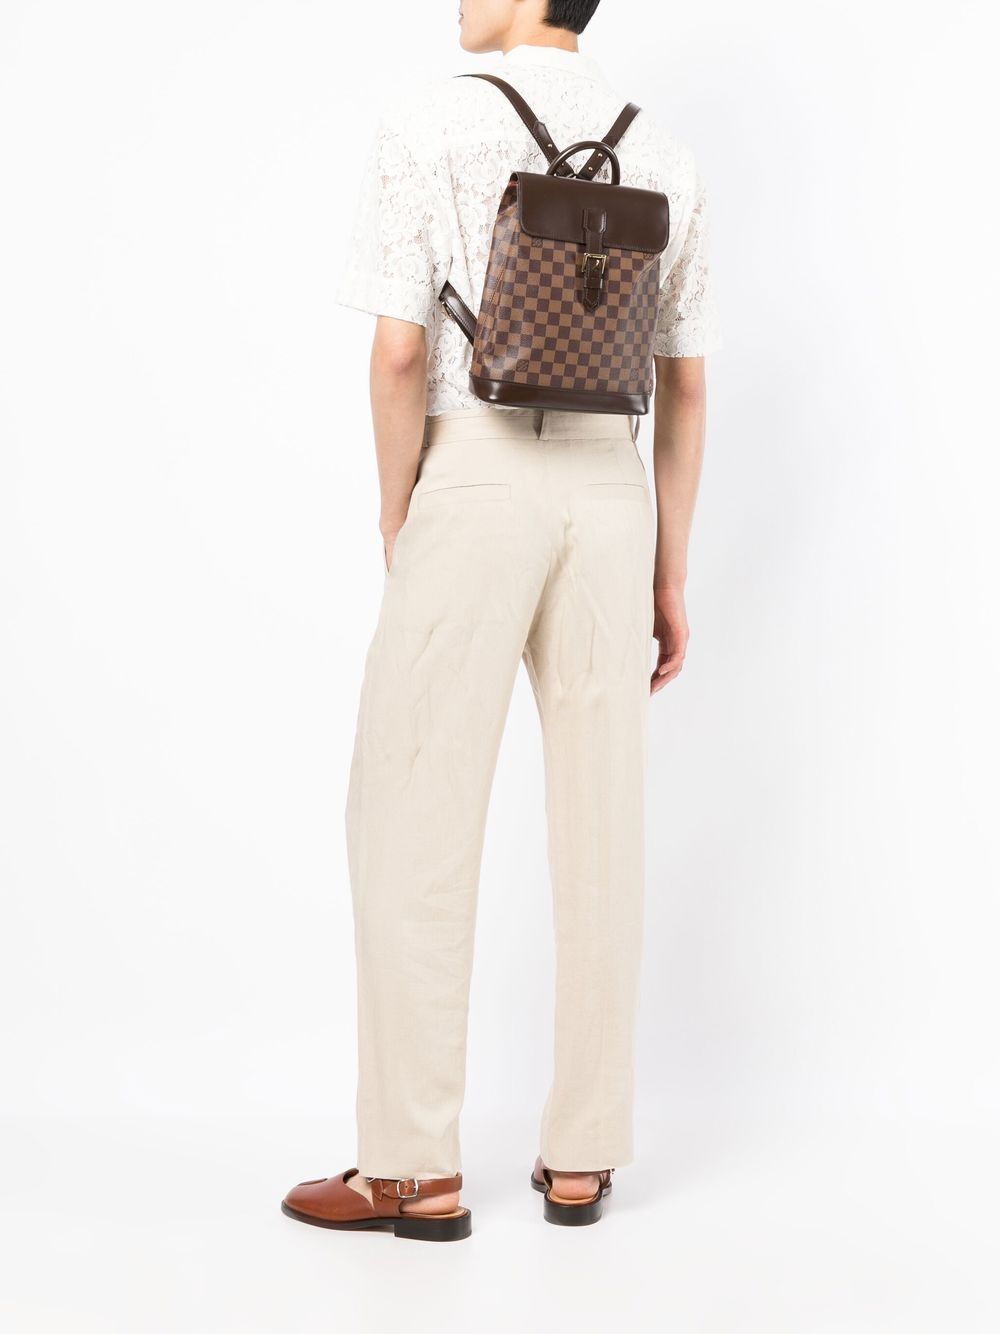 Louis Vuitton Soho Backpacks